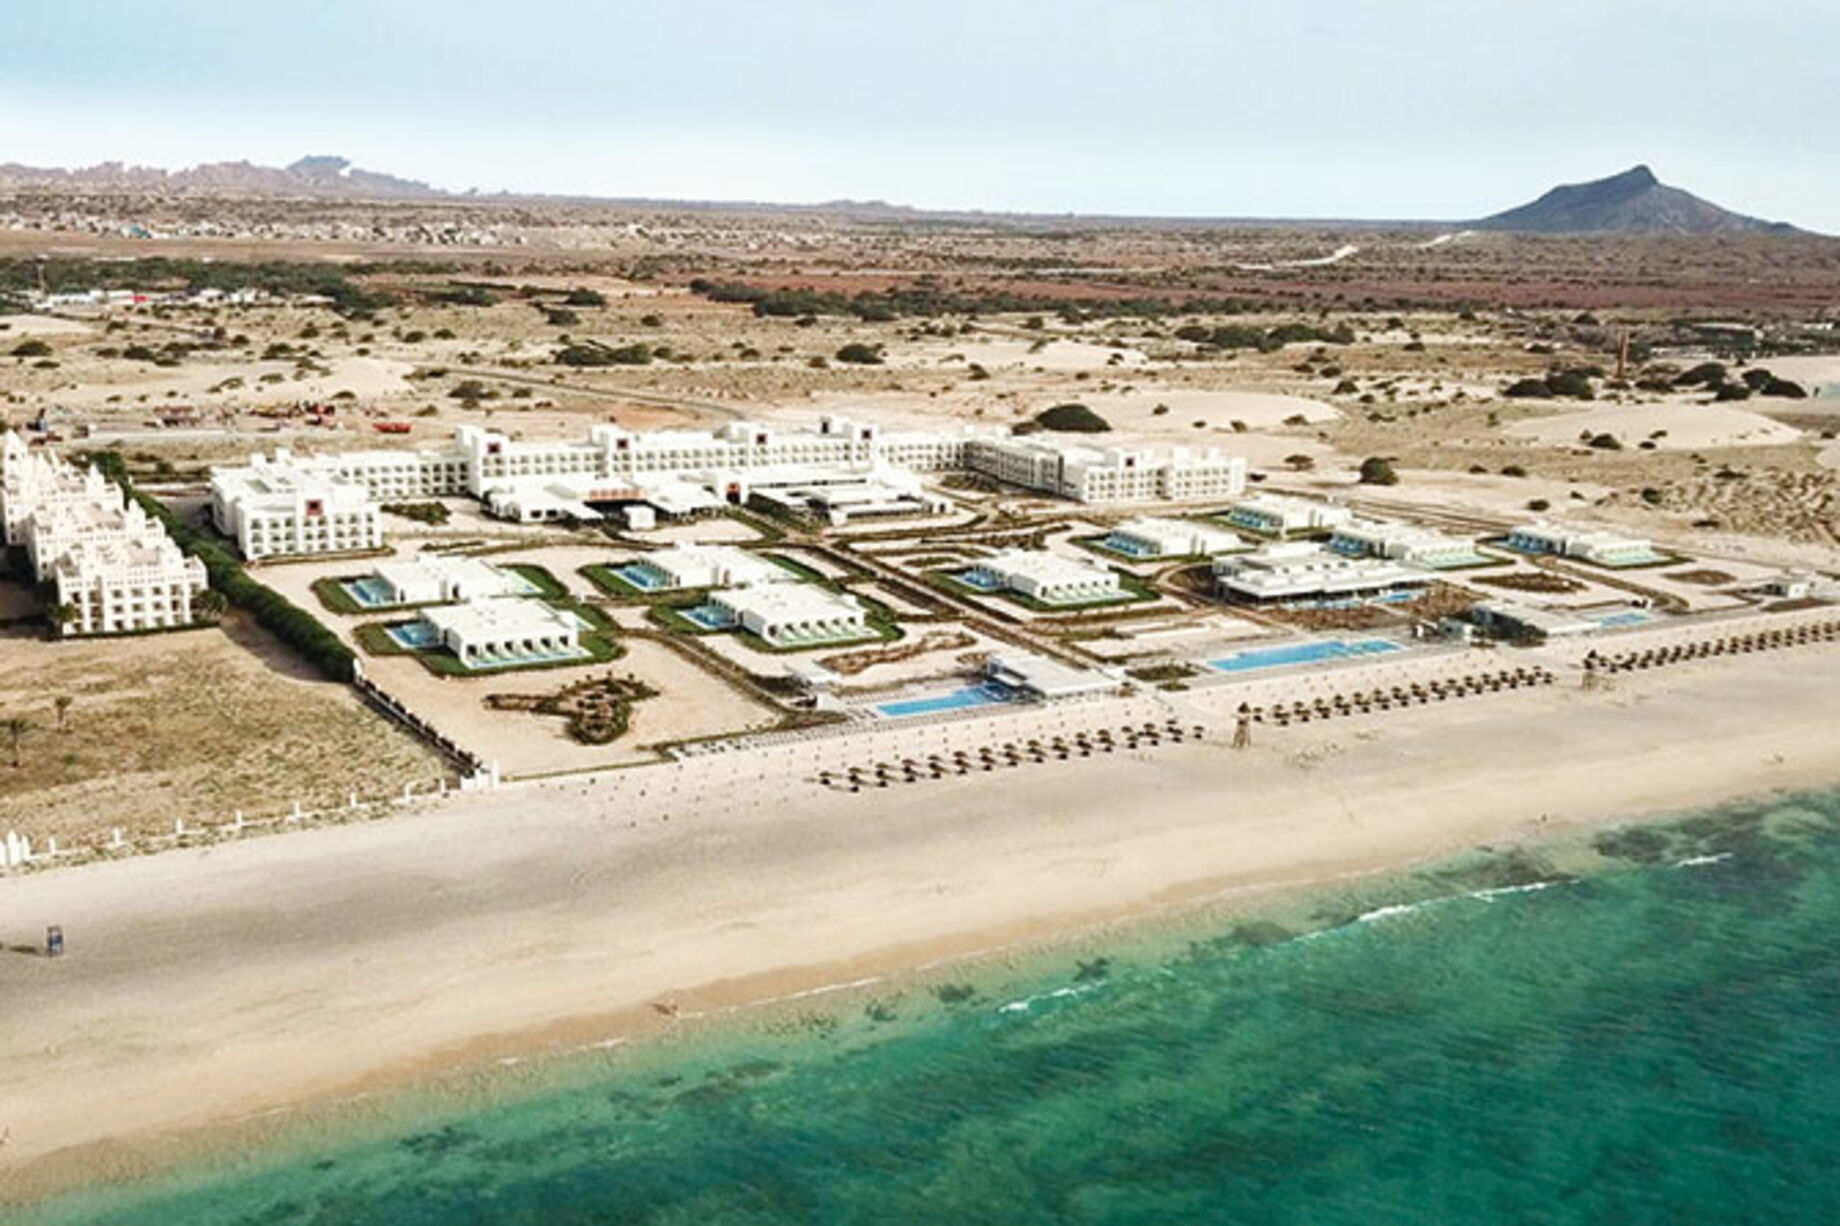 Snor Daggry Banke RIU Hotels opens its fifth hotel in Cape Verde